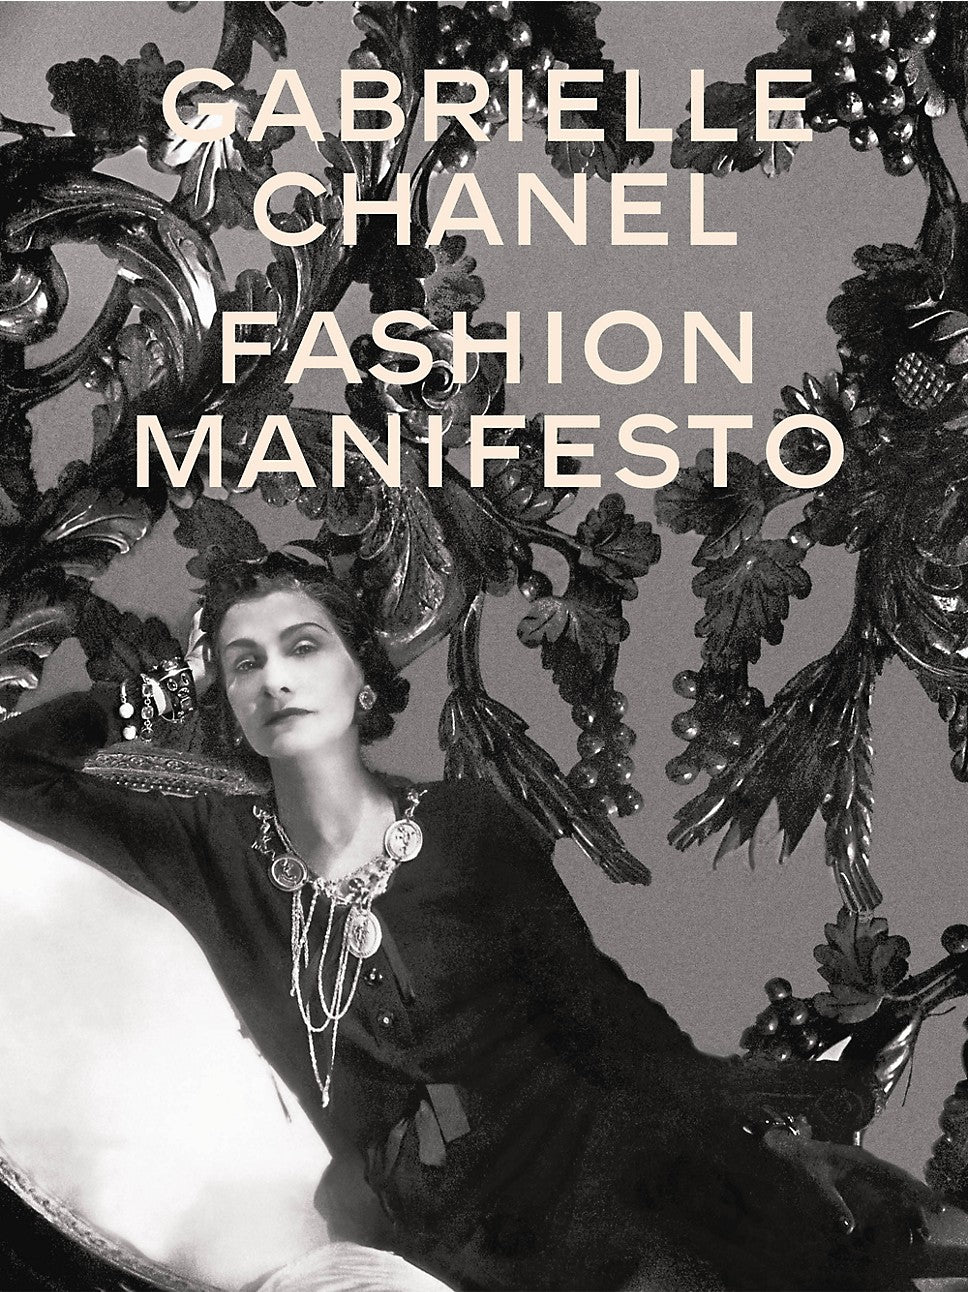 Gabrielle Chanel Fashion Manifesto